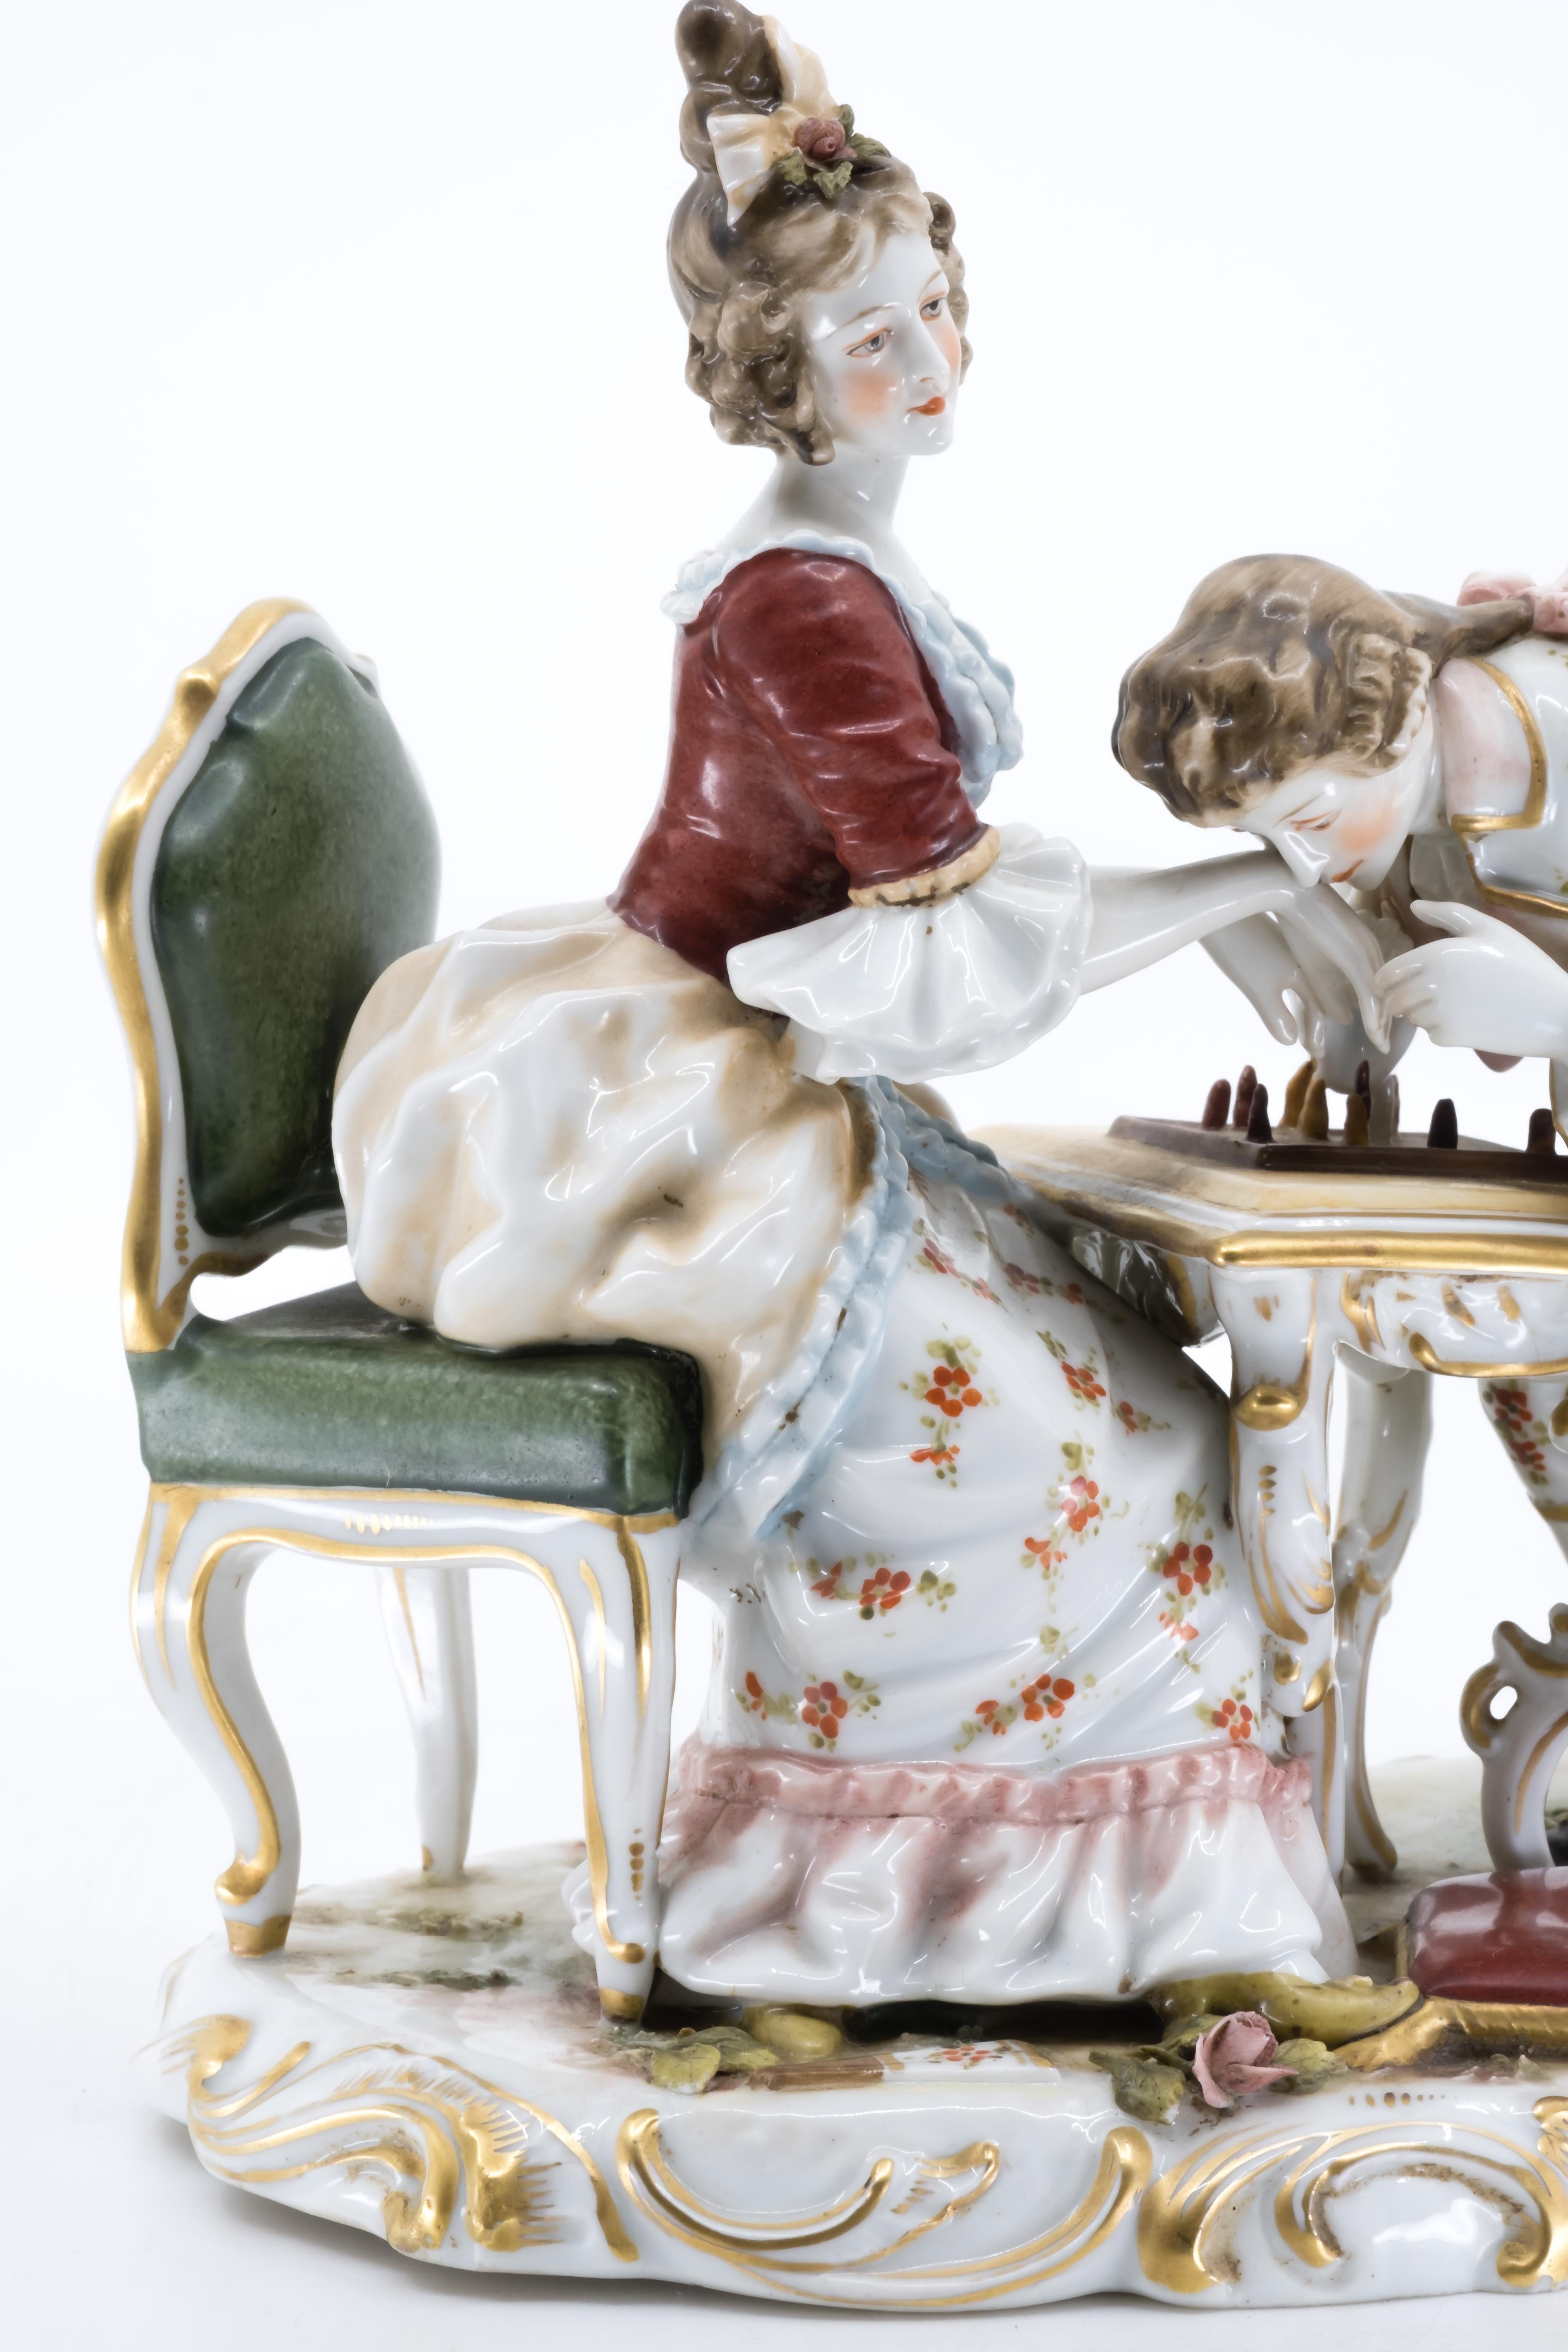 Figurine en porcelaine du XIXe siècle représentant un couple payant aux échecs, le monsieur embrassant la main de la dame. 

Marqué en bleu sous glaçure d'une lettre F (Fürstenberg) avec une couronne.



Expédition incluse 
Livraison gratuite